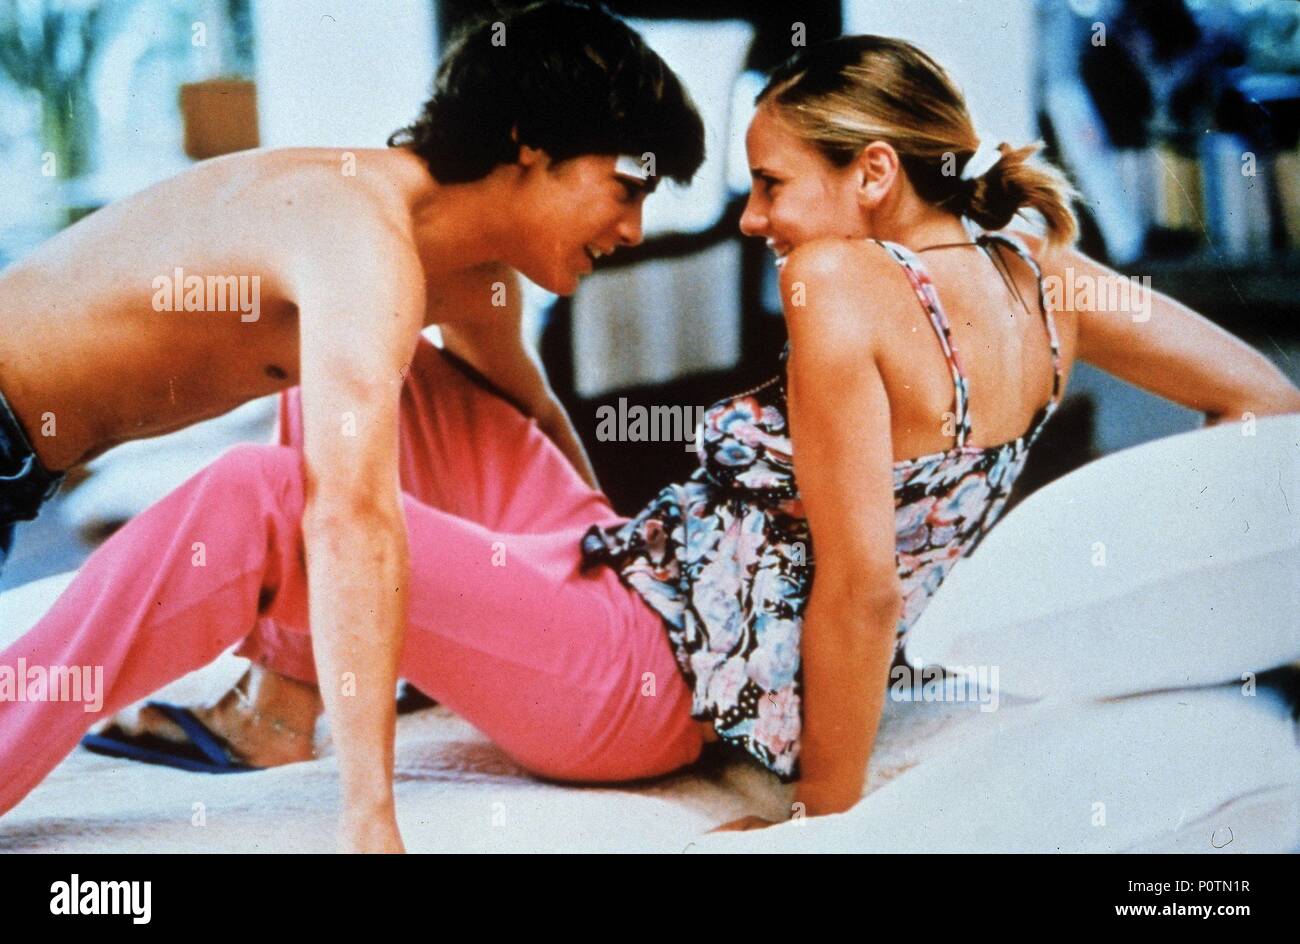 Original Film Title: UNA NOCHE CON SABRINA LOVE.  English Title: A NIGHT WITH SABRINA LOVE.  Film Director: ALEJANDRO AGRESTI.  Year: 2000. Stock Photo